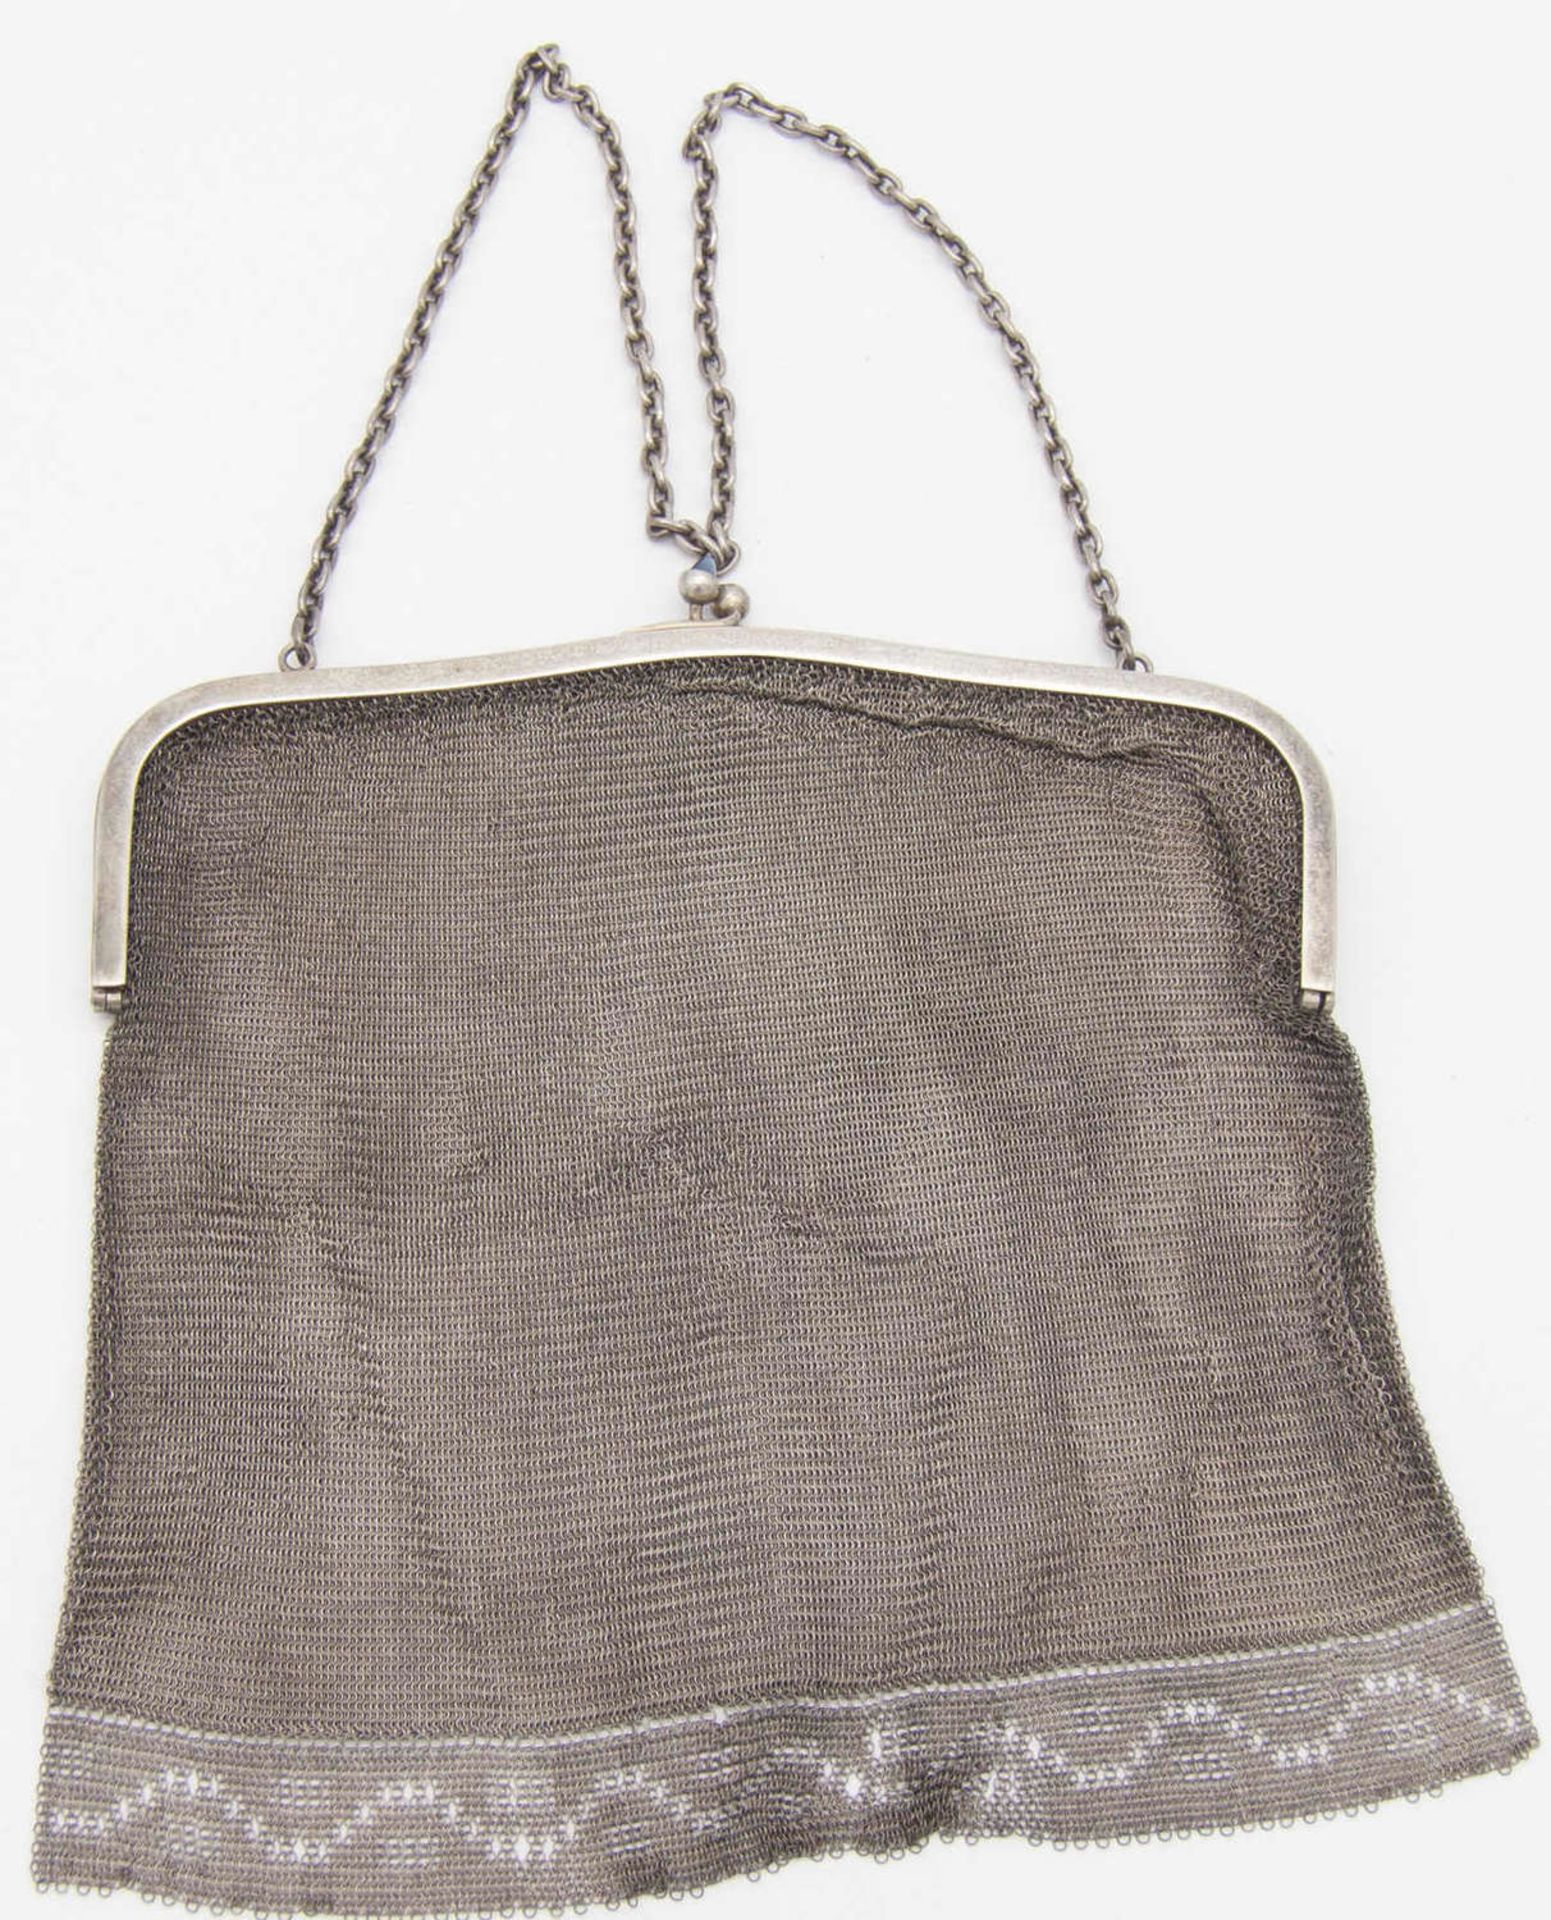 Silber - Abend - Handtasche mit Saphiren am Verschluss. Fein gewebte Ornament - Bordüre am unteren